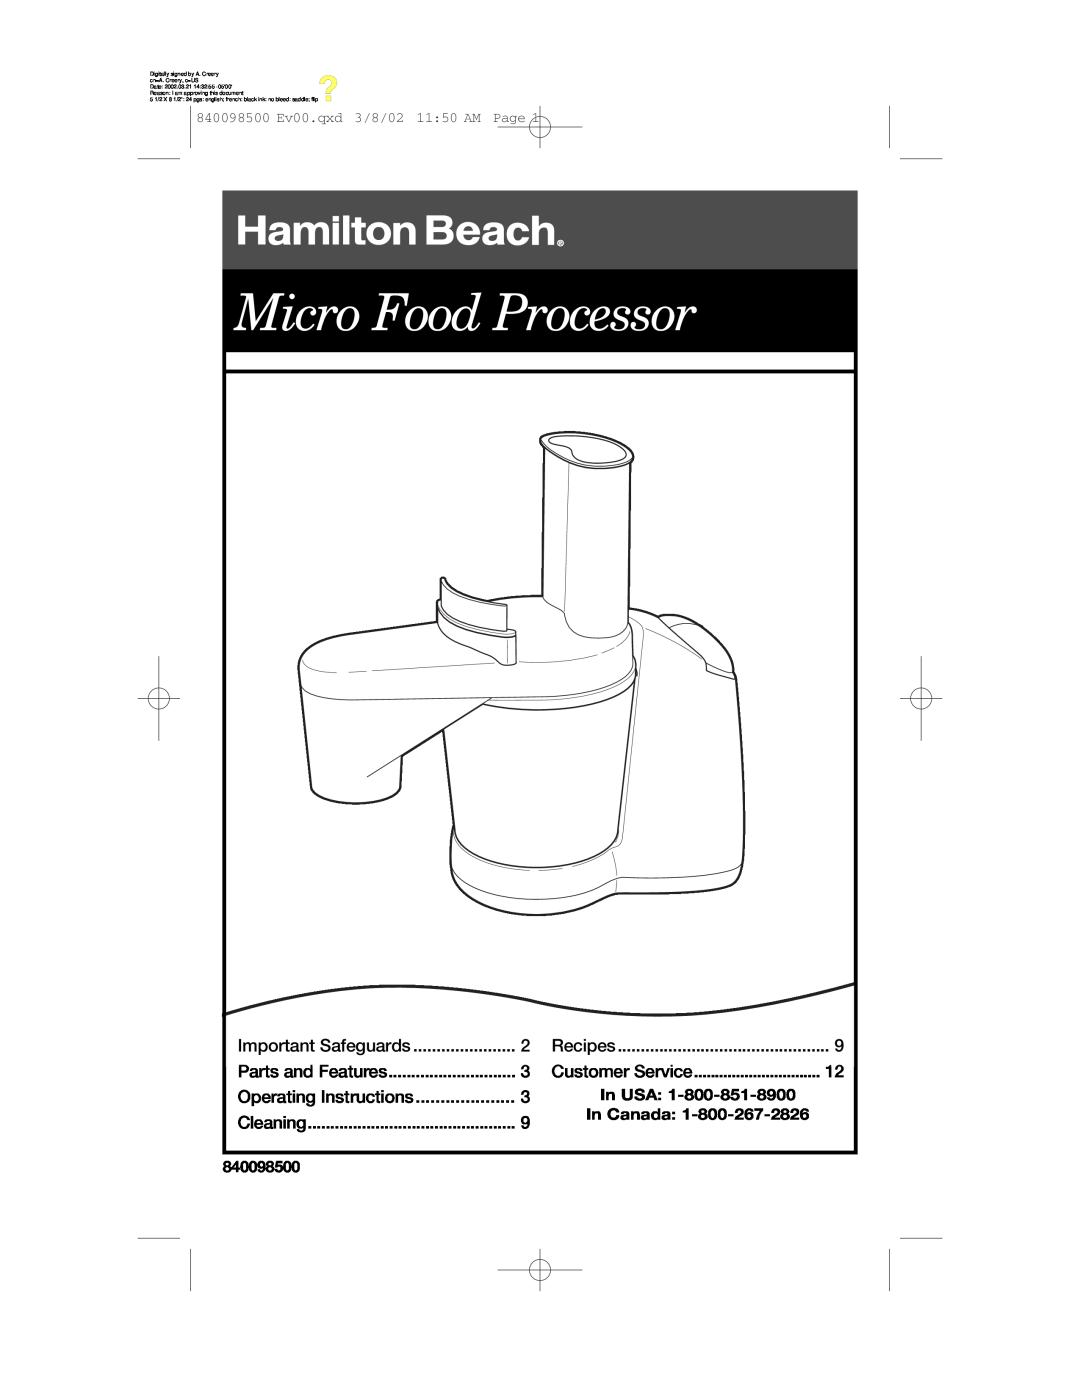 Hamilton Beach 70200 manual Micro Food Processor, In USA, In Canada, 840098500 Ev00.qxd 3/8/02 1150 AM Page 